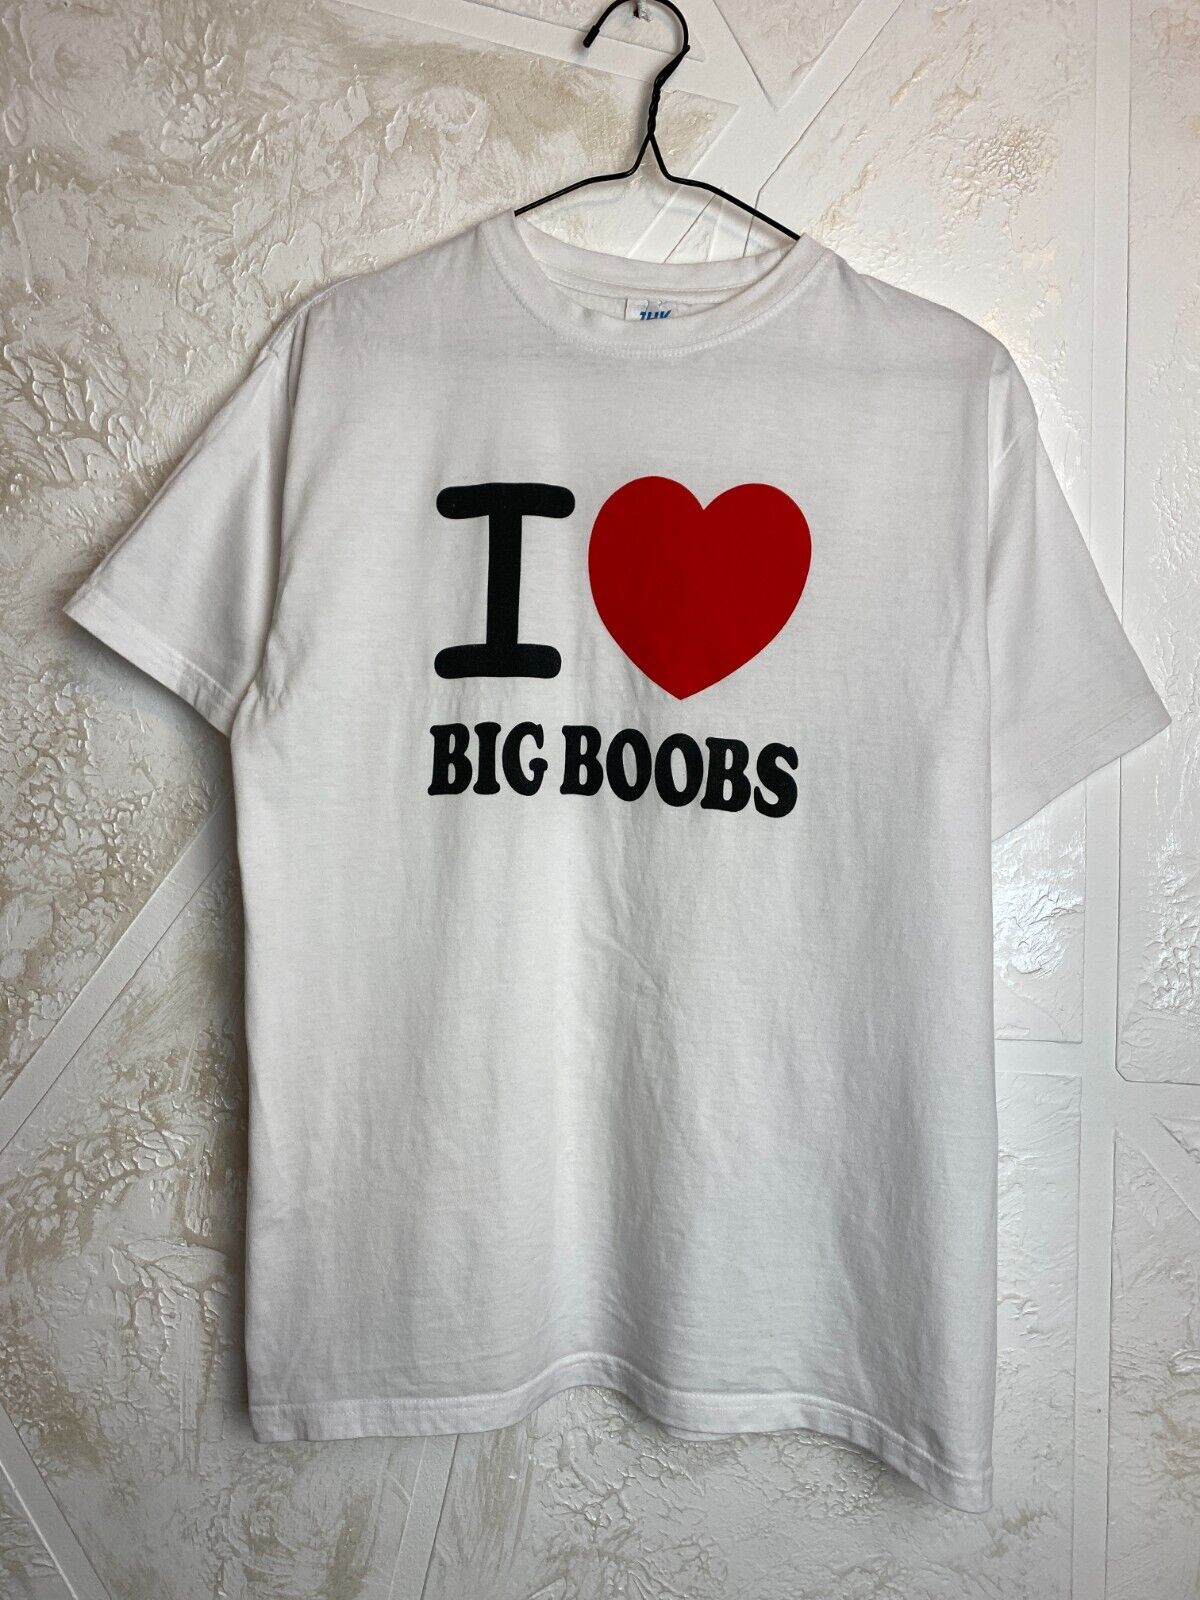 doru rusu recommends l love big boobs pic